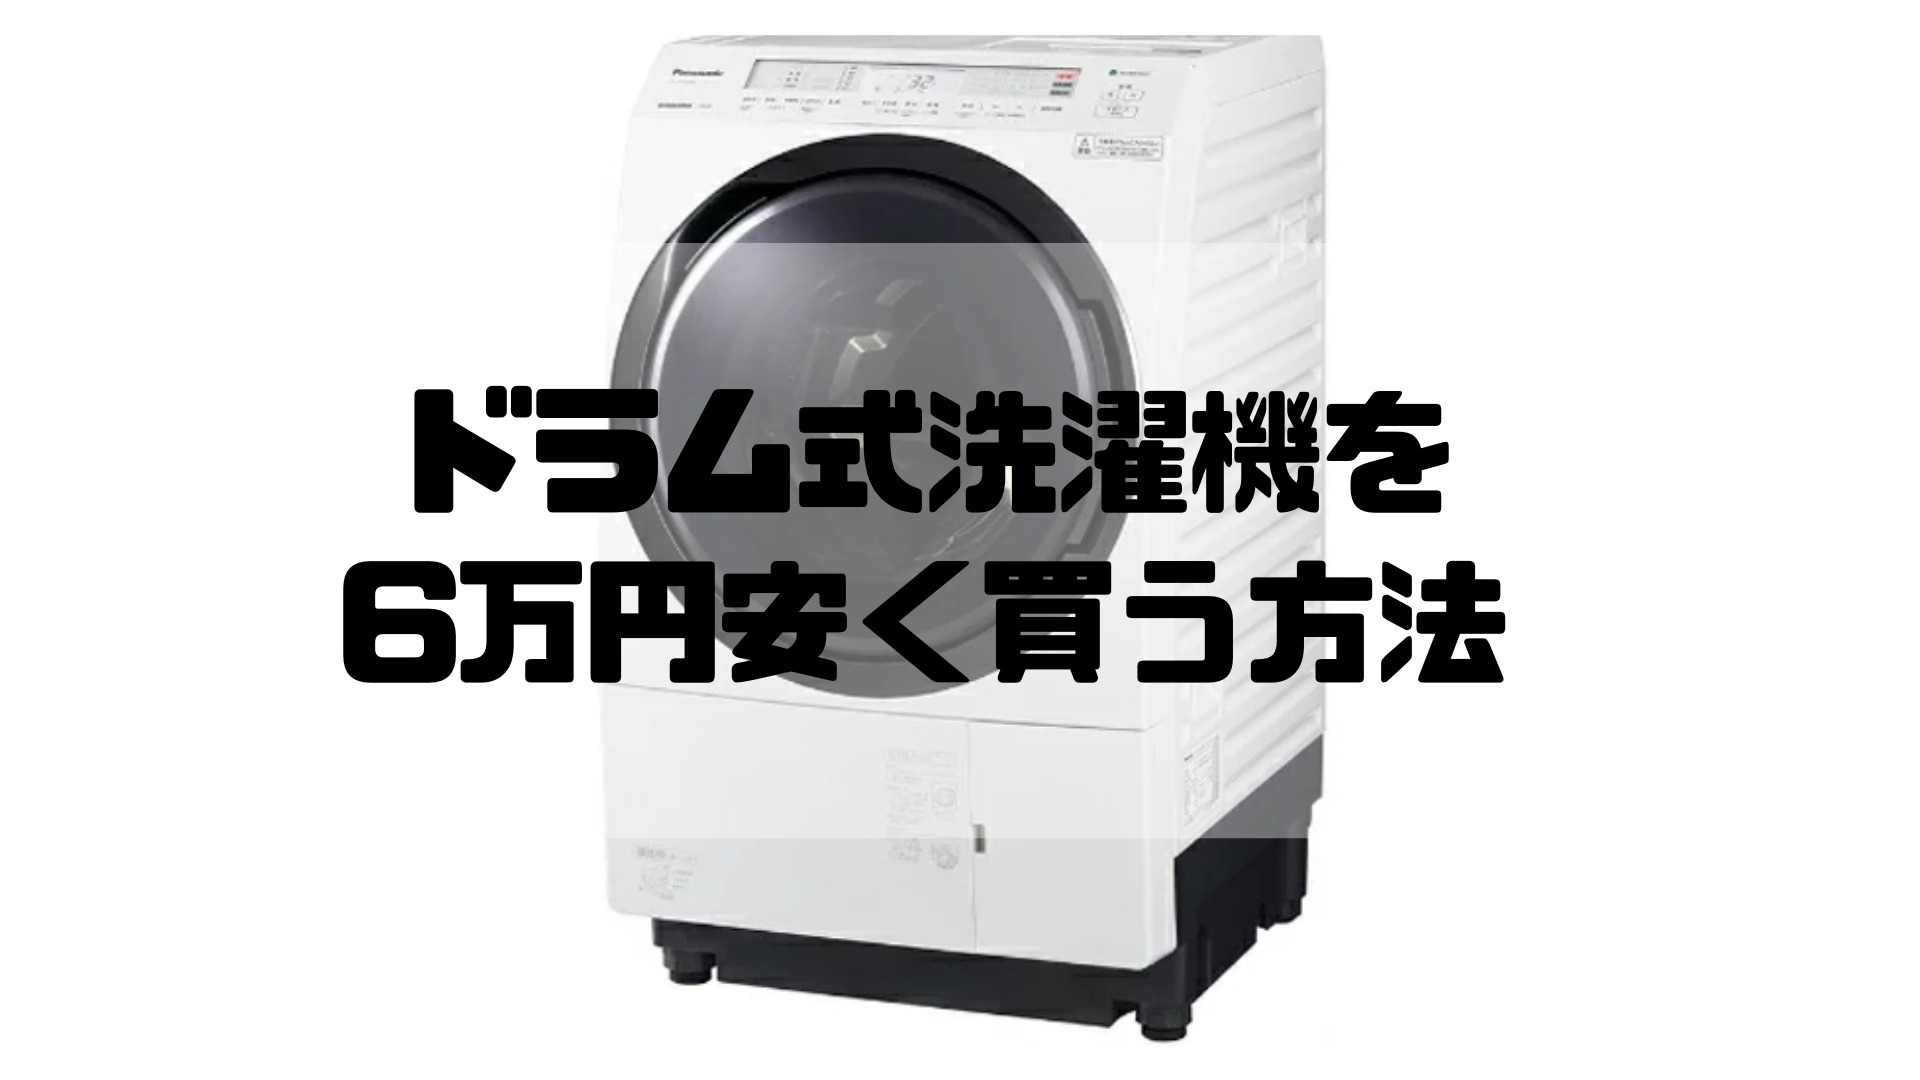 ドラム式洗濯機を6万円安く買う方法【パナソニックNA-VX800BL/R 